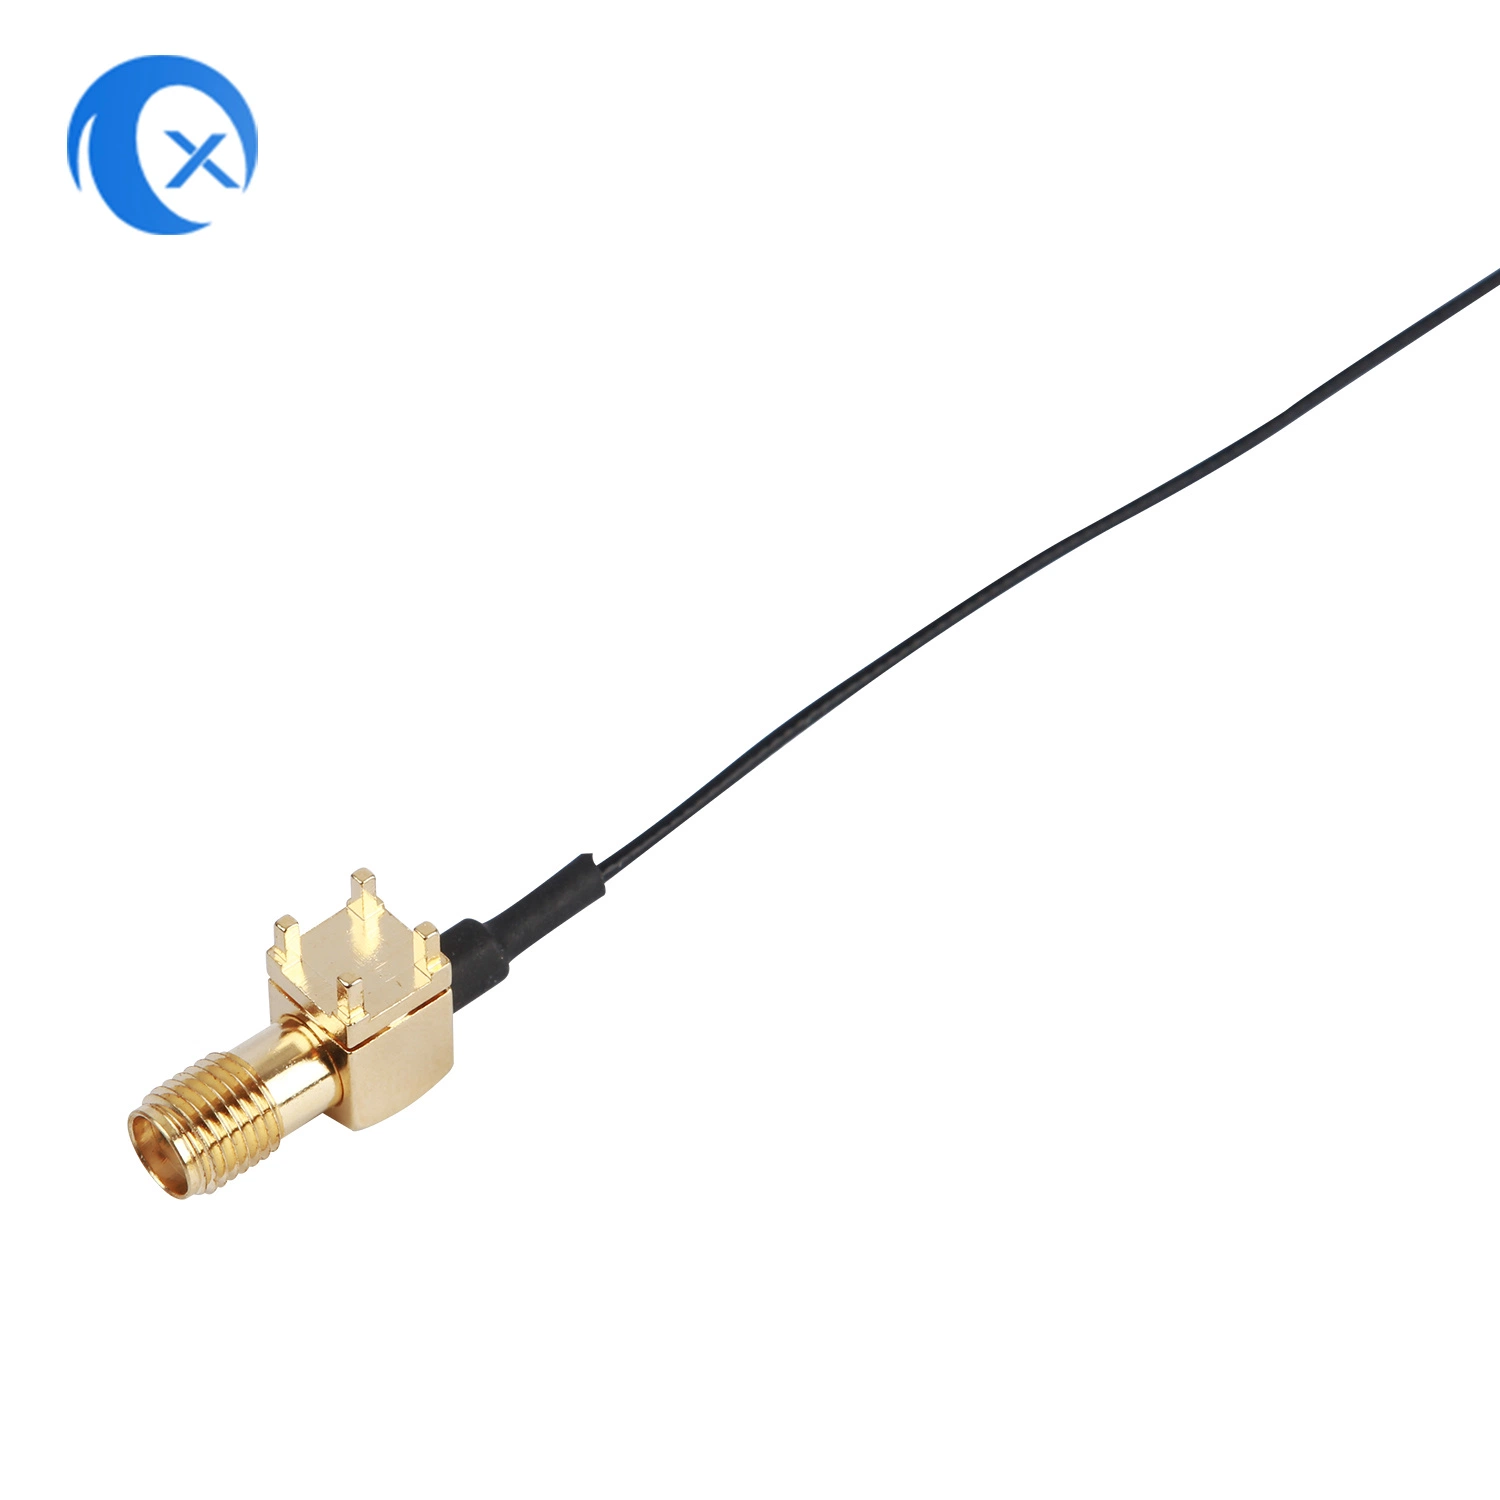 SMA conector hembra para montaje en PCB a U. FL Ipex Jumber el cable de extensión de las mejores conjuntos de cable coaxial RF